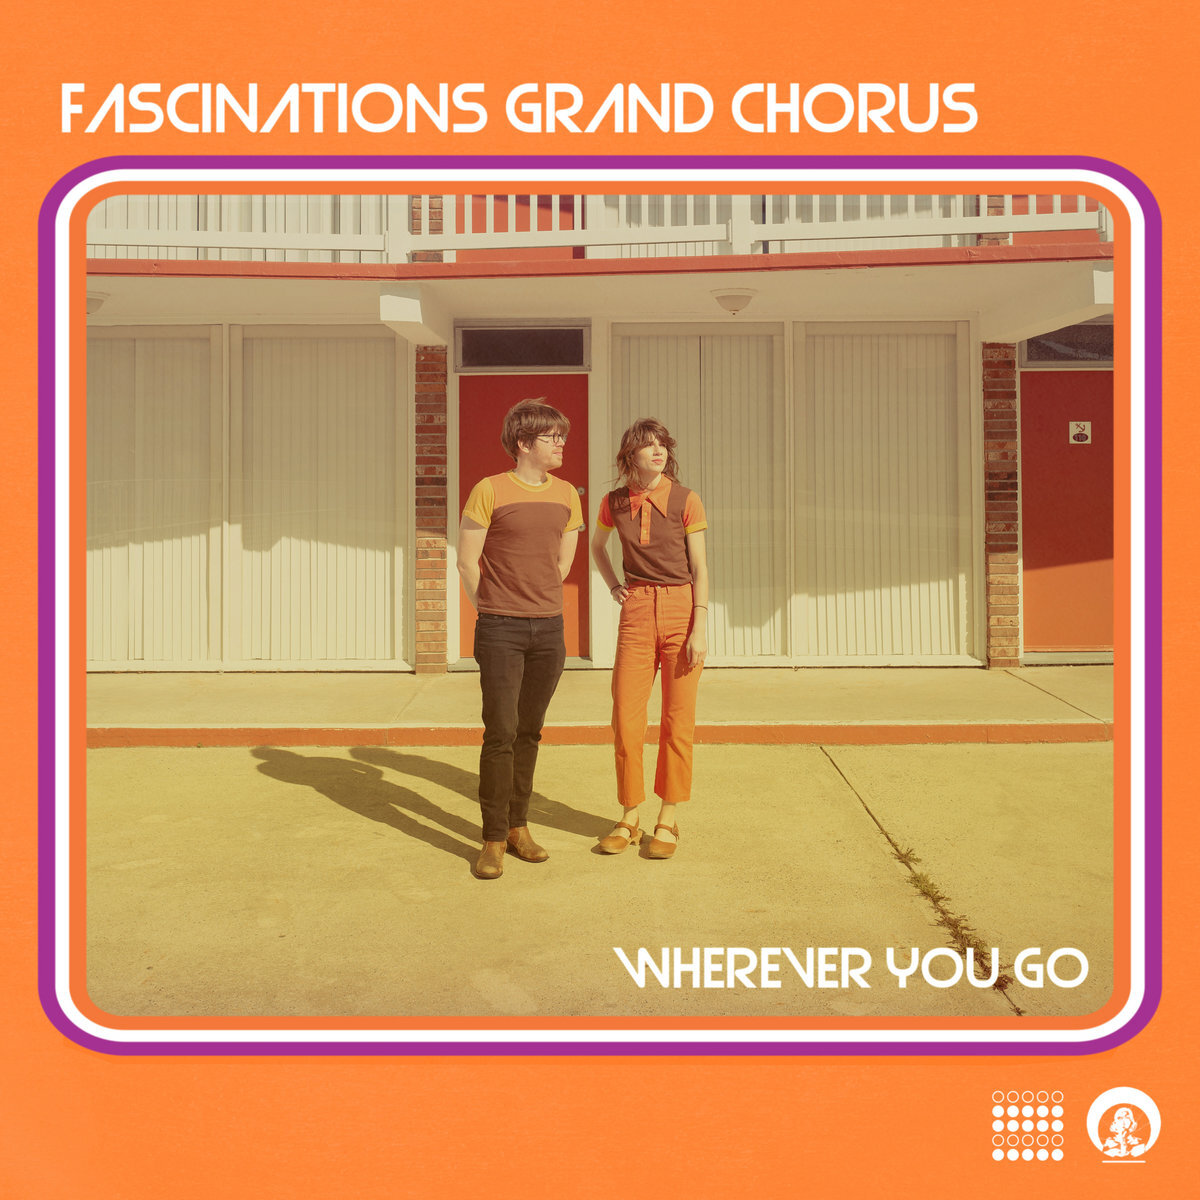 Fascinations Grand Chorus "Wherever You Go"